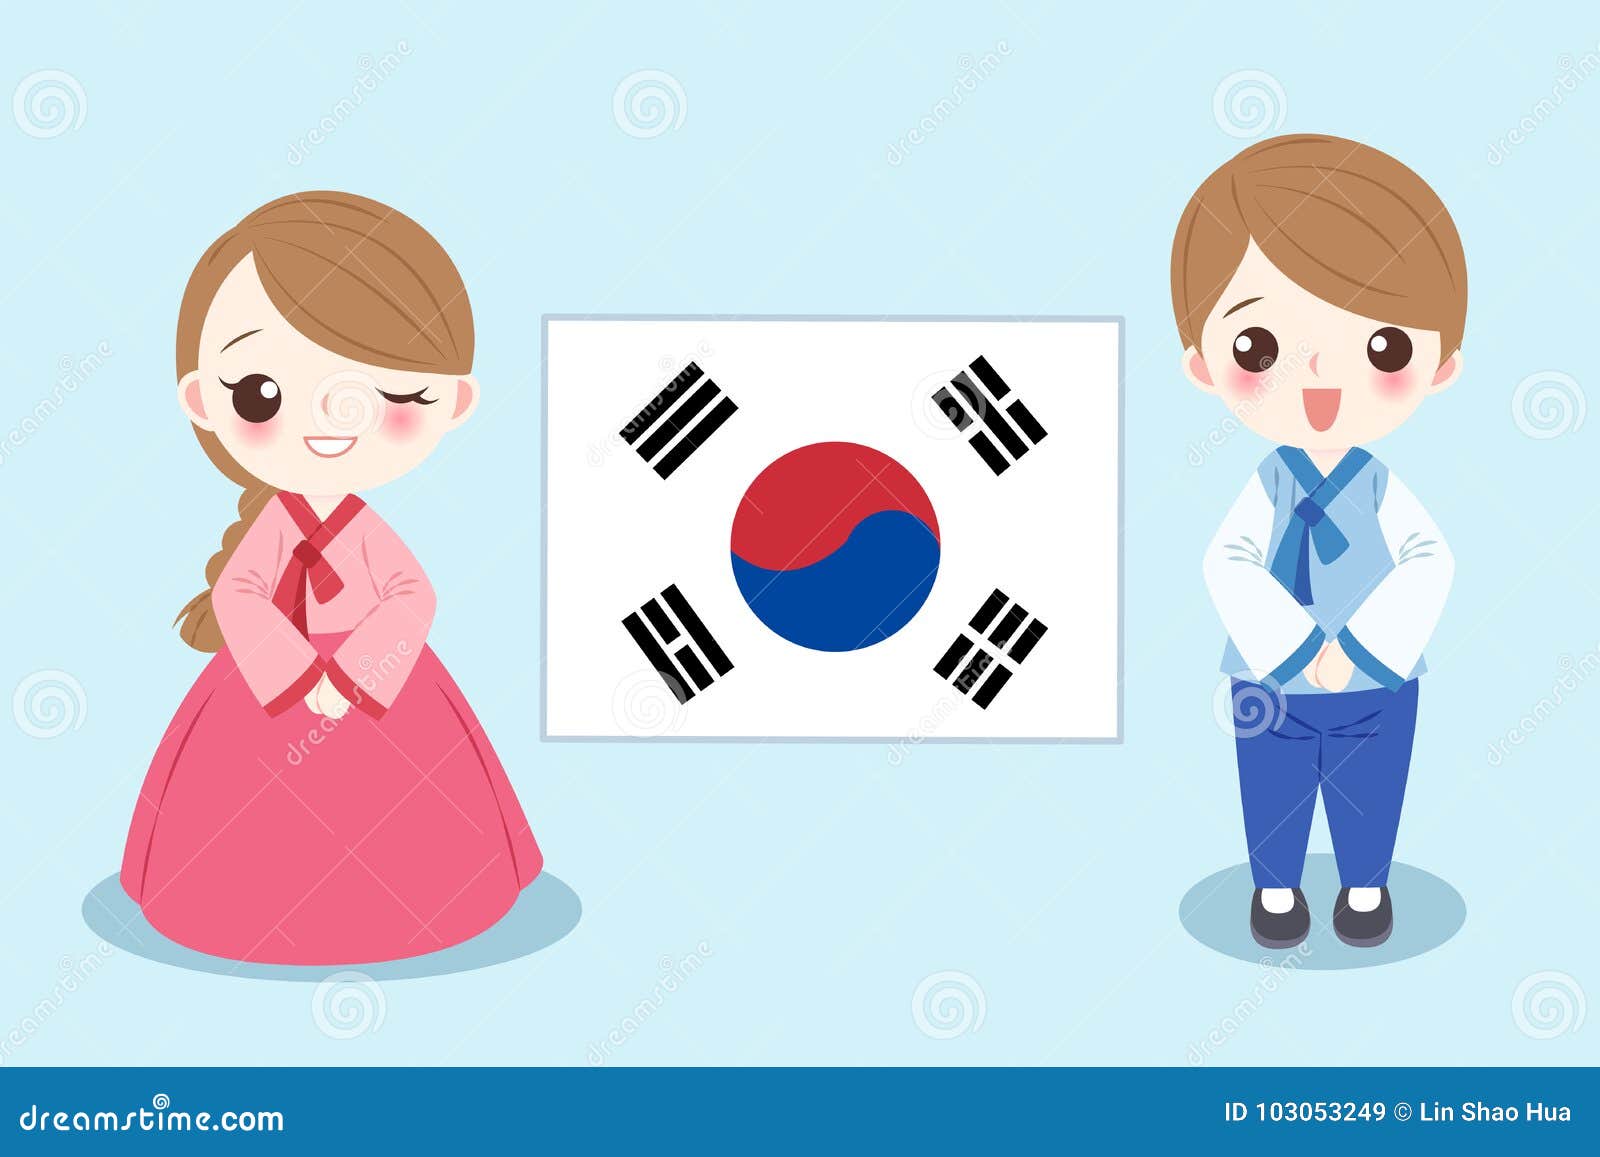 Cartoon korea people stock illustration. Illustration of female - 103053249